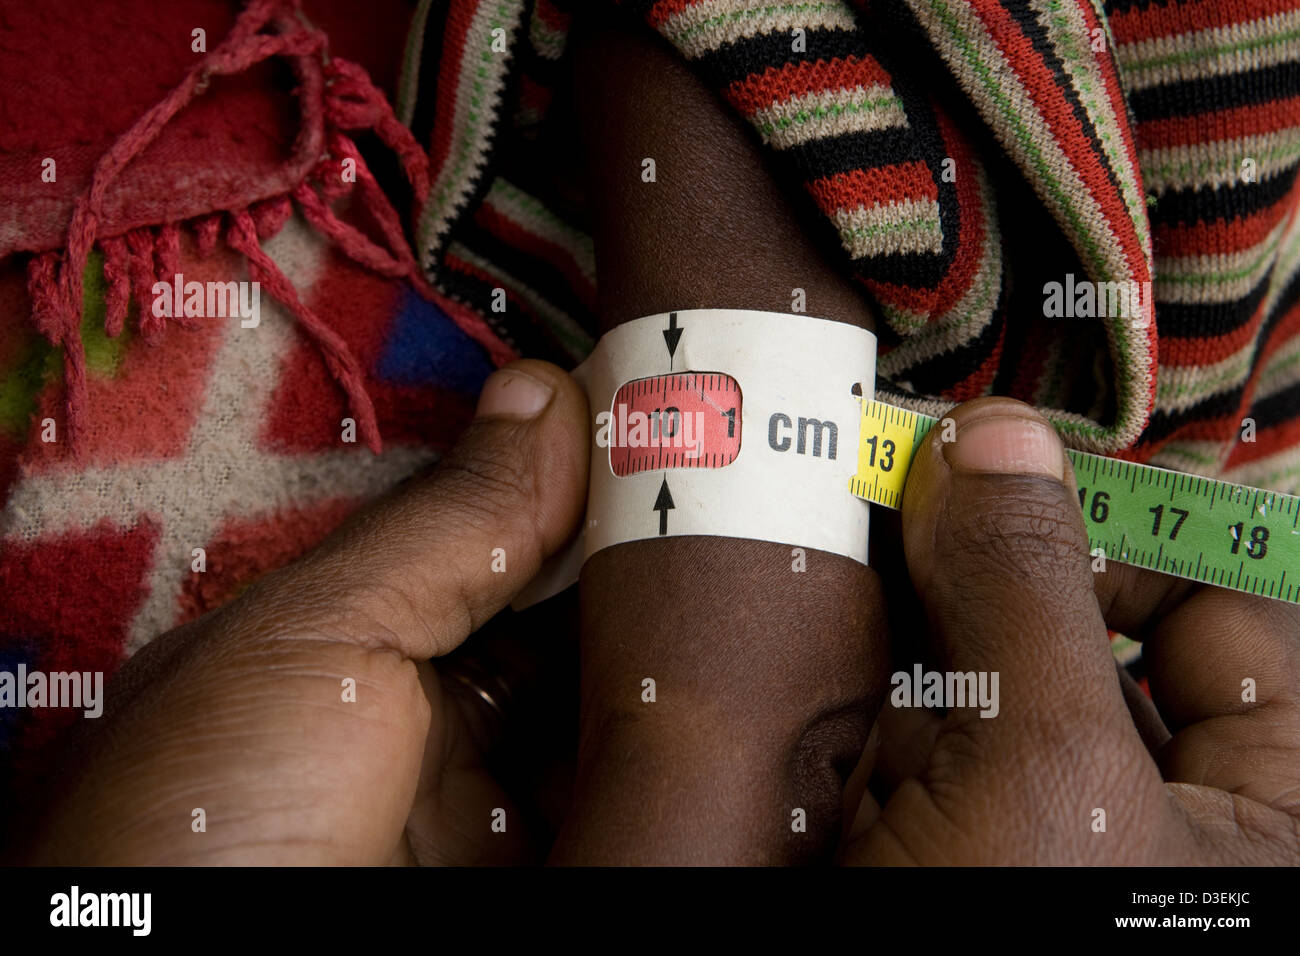 BITENA HEALTH CENTER, Äthiopien, 20. August 2008: ein junges Kind hat den Arm gemessen, um ihr Niveau der Unterernährung zu überprüfen. Stockfoto